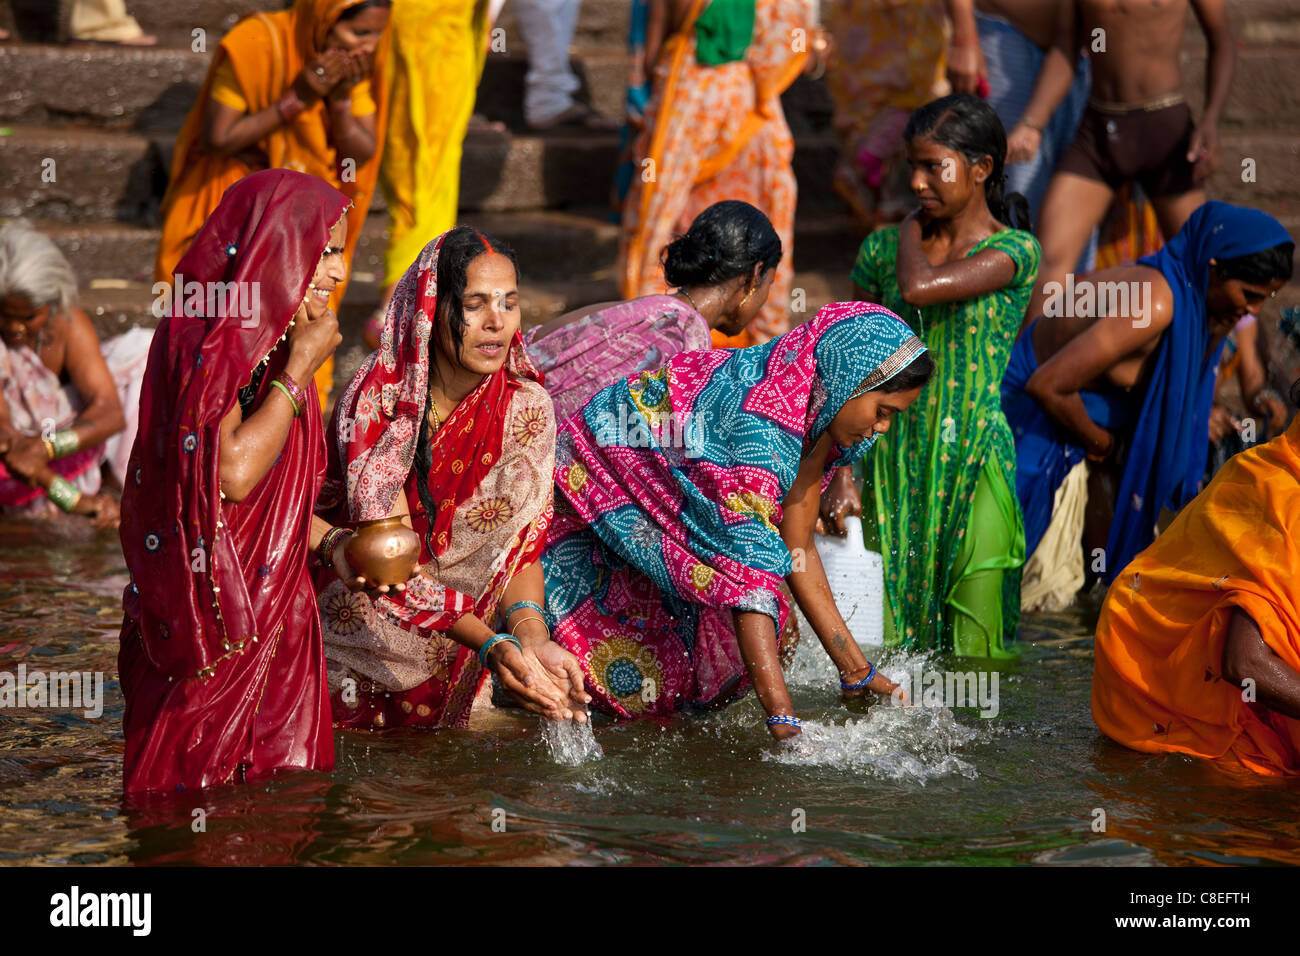 Indisch Hinduistischen Pilger Baden In Der Ganges Fluss Am 